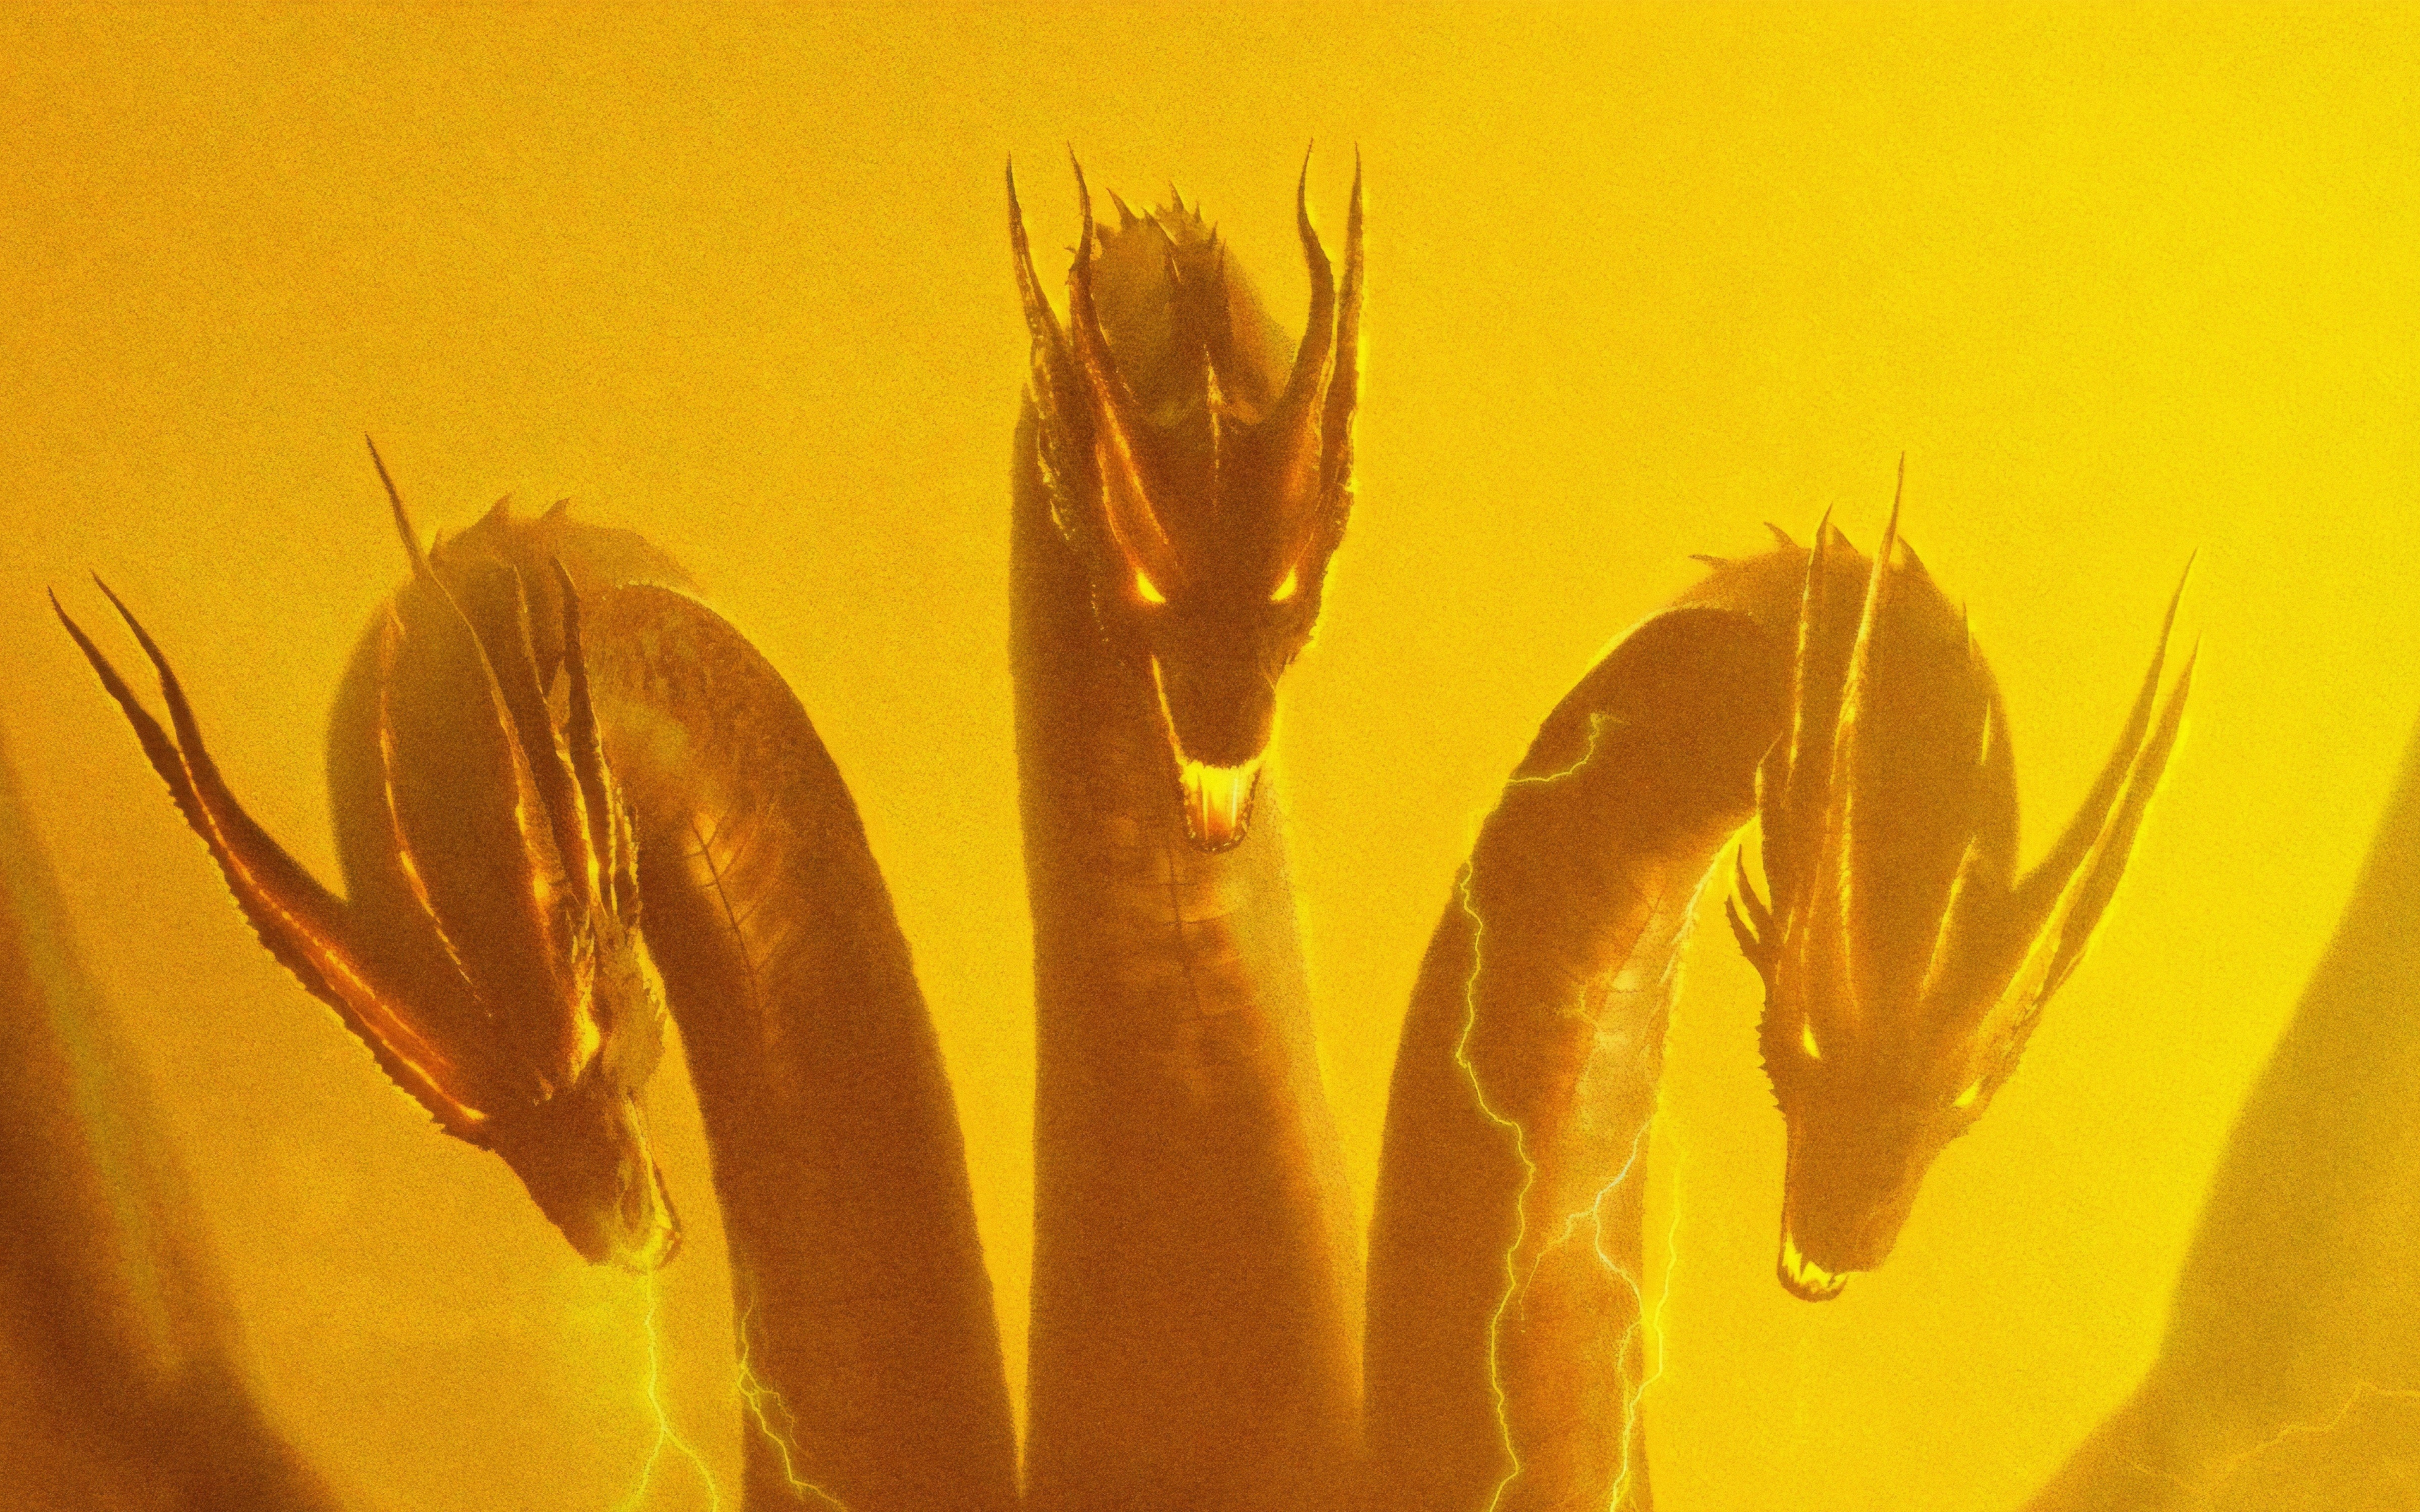 Download wallpaper 3840x2400 three head dragon, godzilla: king of the  monsters, 2019 movie 4k wallaper, 4k ultra hd 16:10 wallpaper, 3840x2400 hd  background, 16908